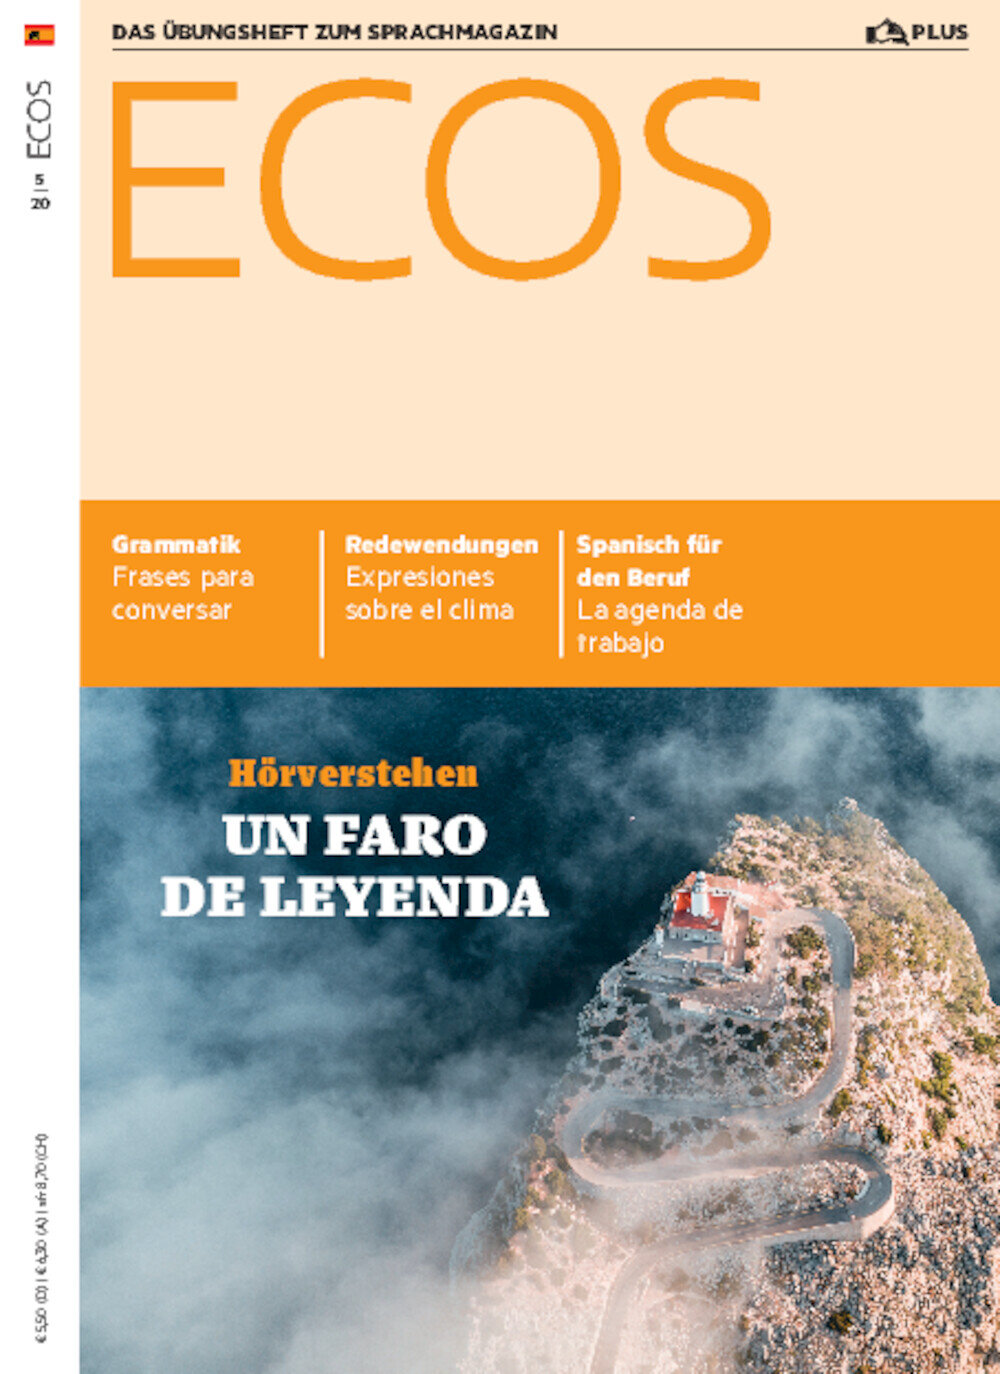 Ecos PLUS ePaper 05/2020